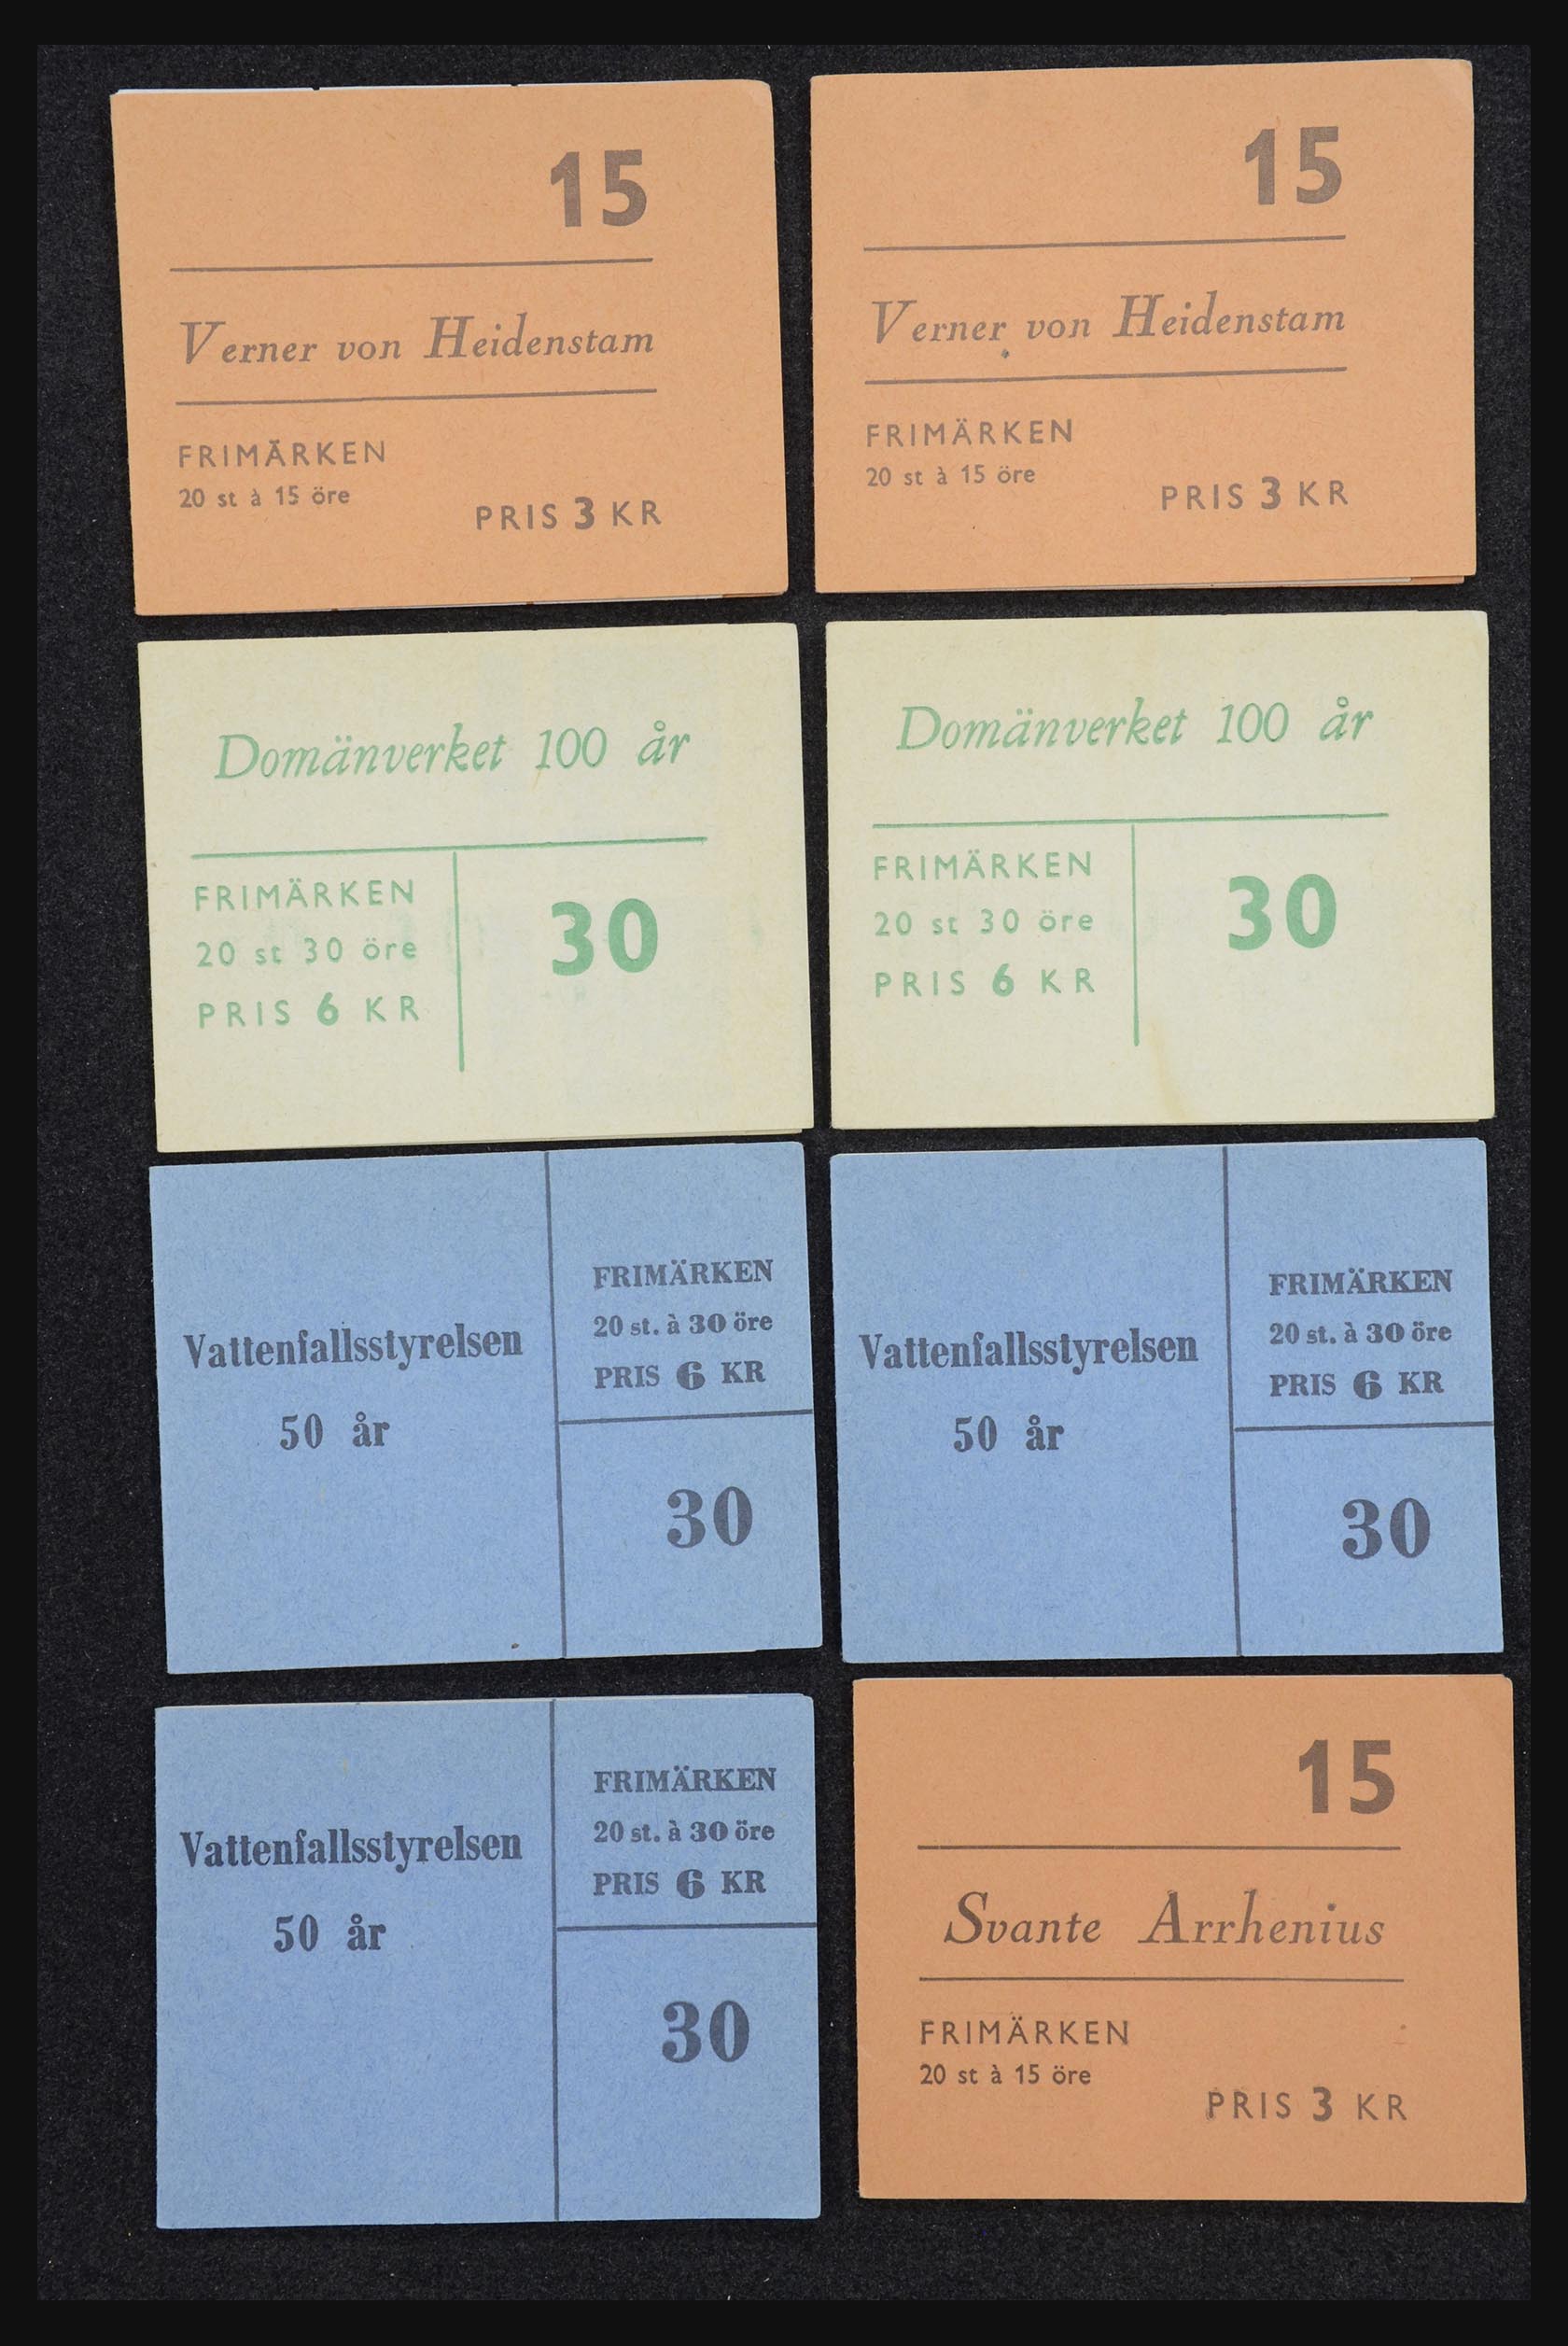 32026 044 - 32026 Sweden stampbooklets 1949-1990.